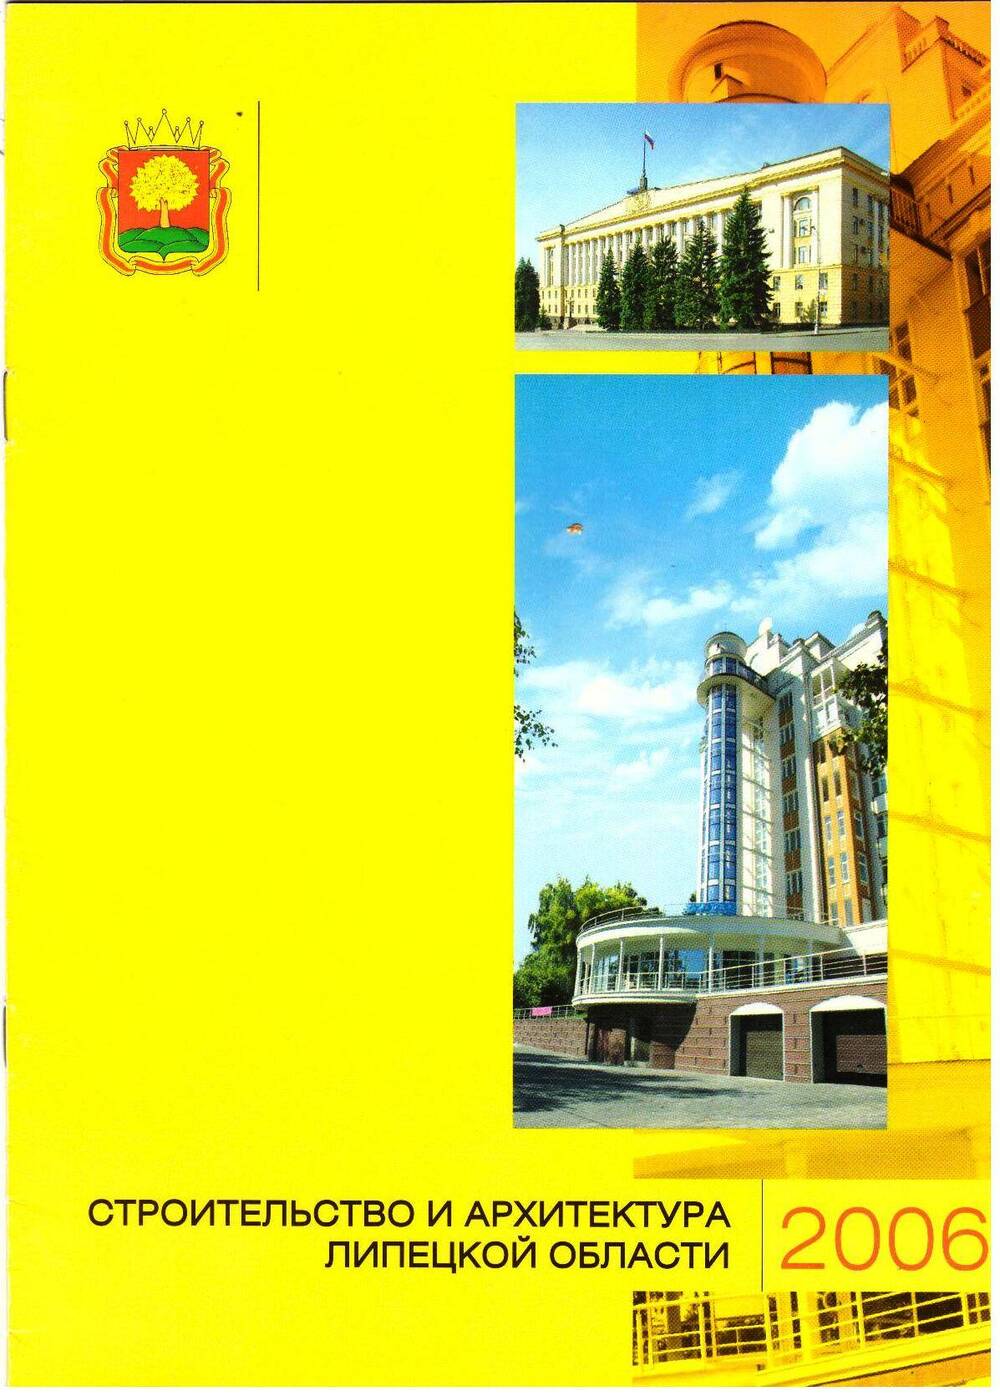 Проспект Строительство и архитектура Липецкой области,  г. Липецк, 2006